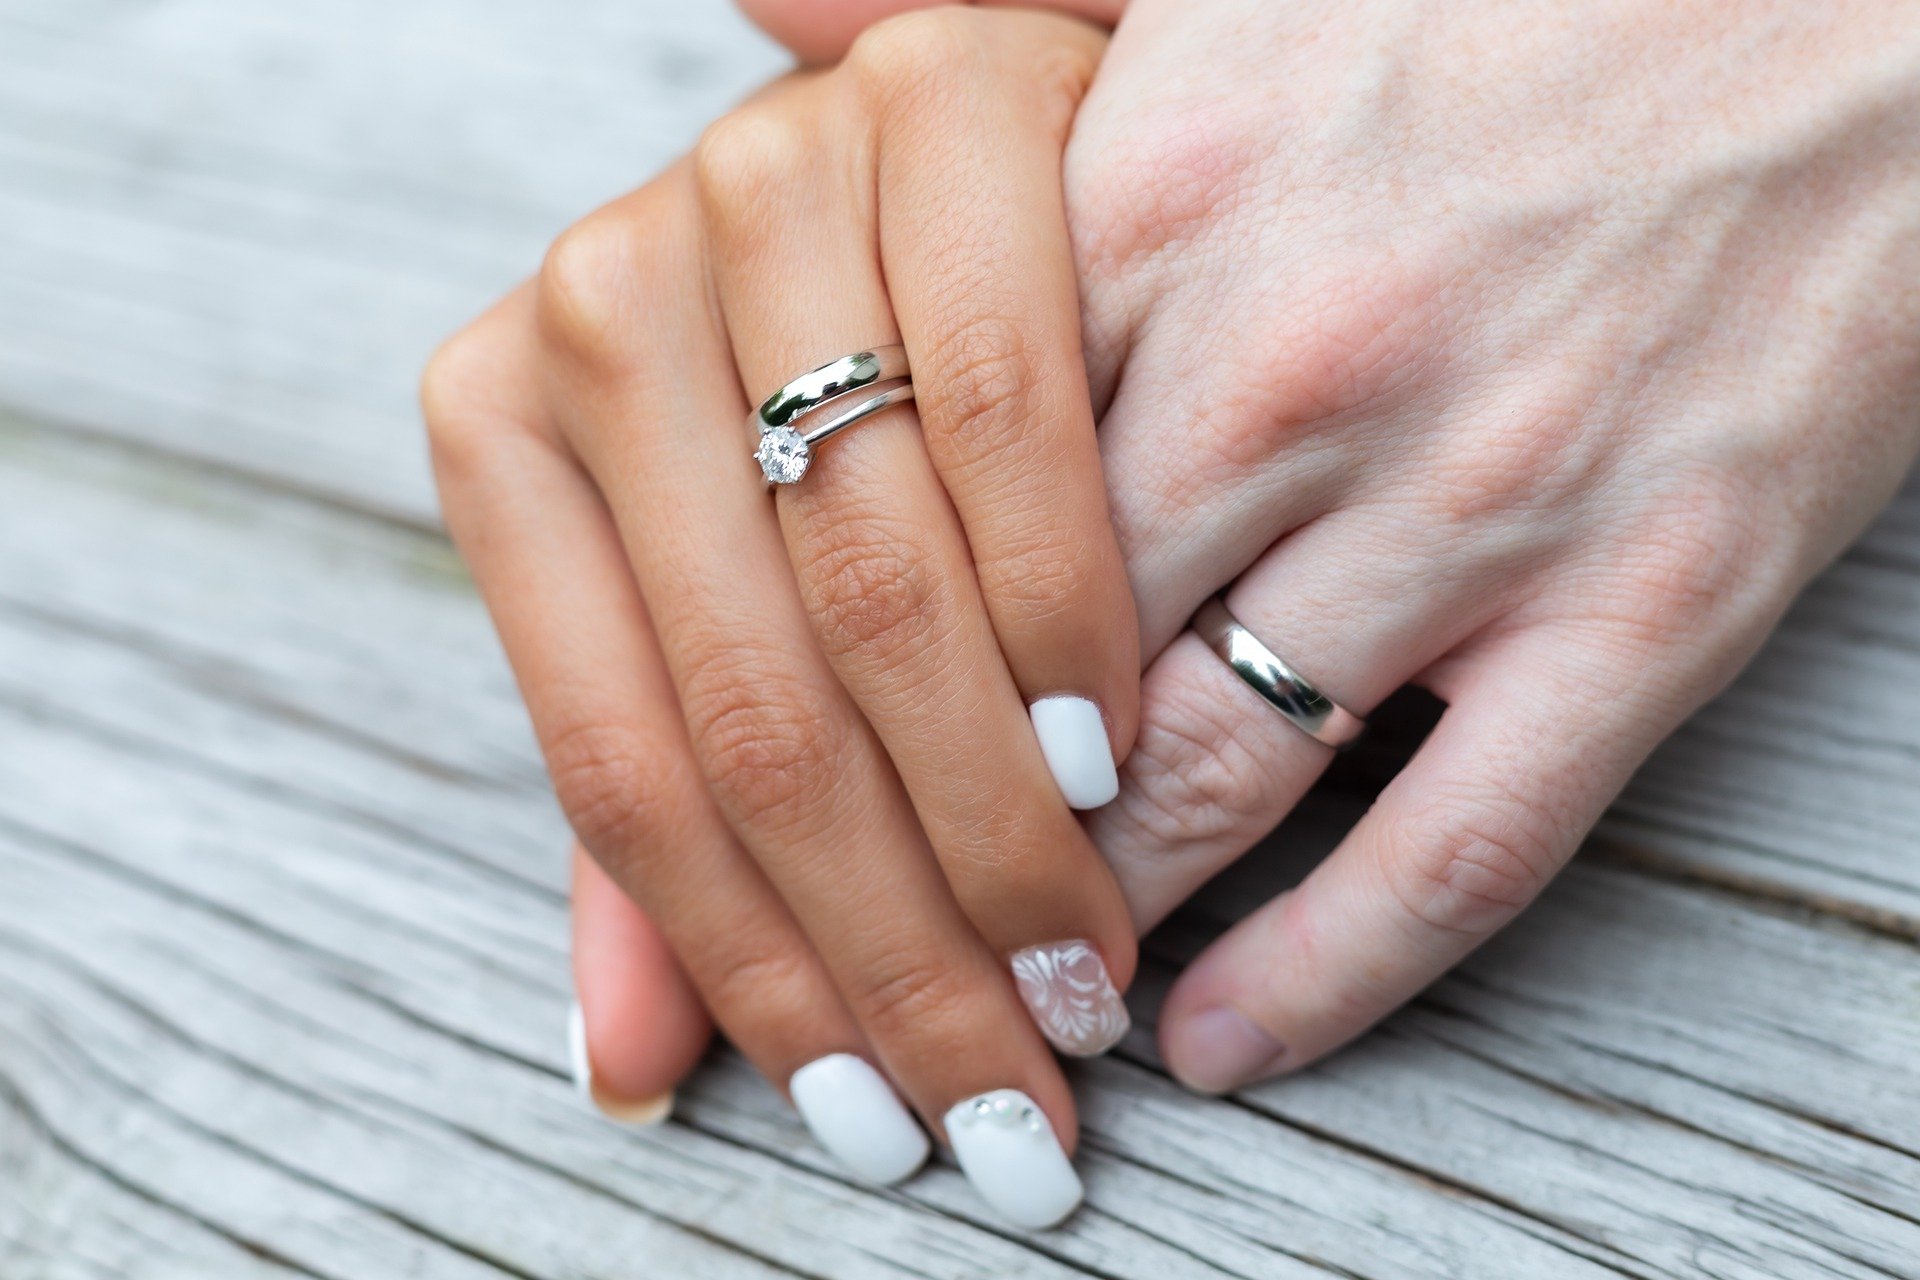 Кольцо ритуалы. Обручальное и помолвочное кольцо. Обручальные кольца на руках. Помолвочное и обручальное кольцо на пальце. Обручальное и помолвочное кольцо вместе.